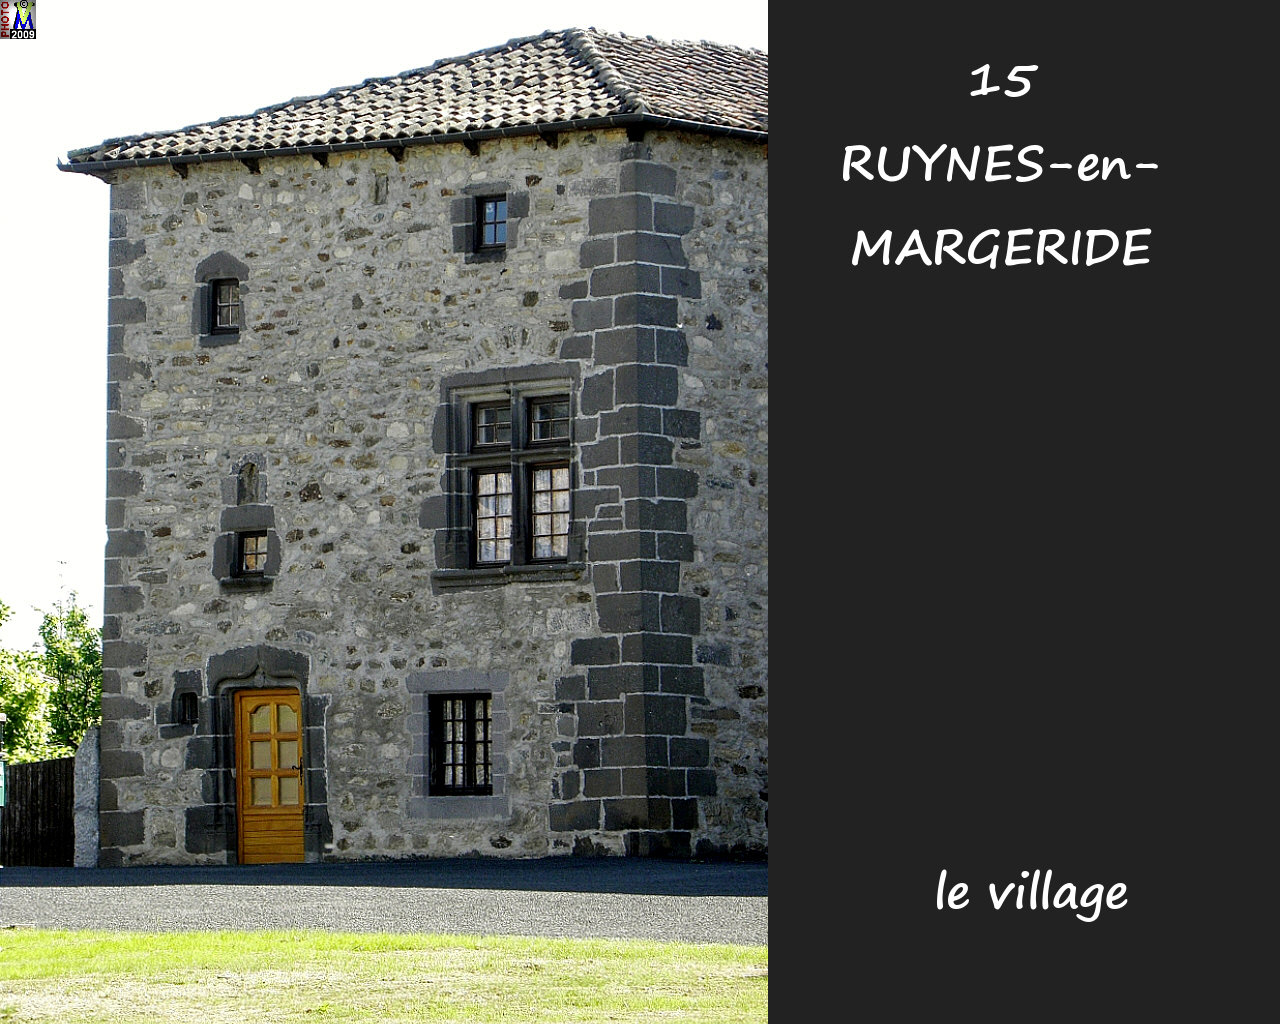 15RUYNES-MARGERIDE_village_100.jpg